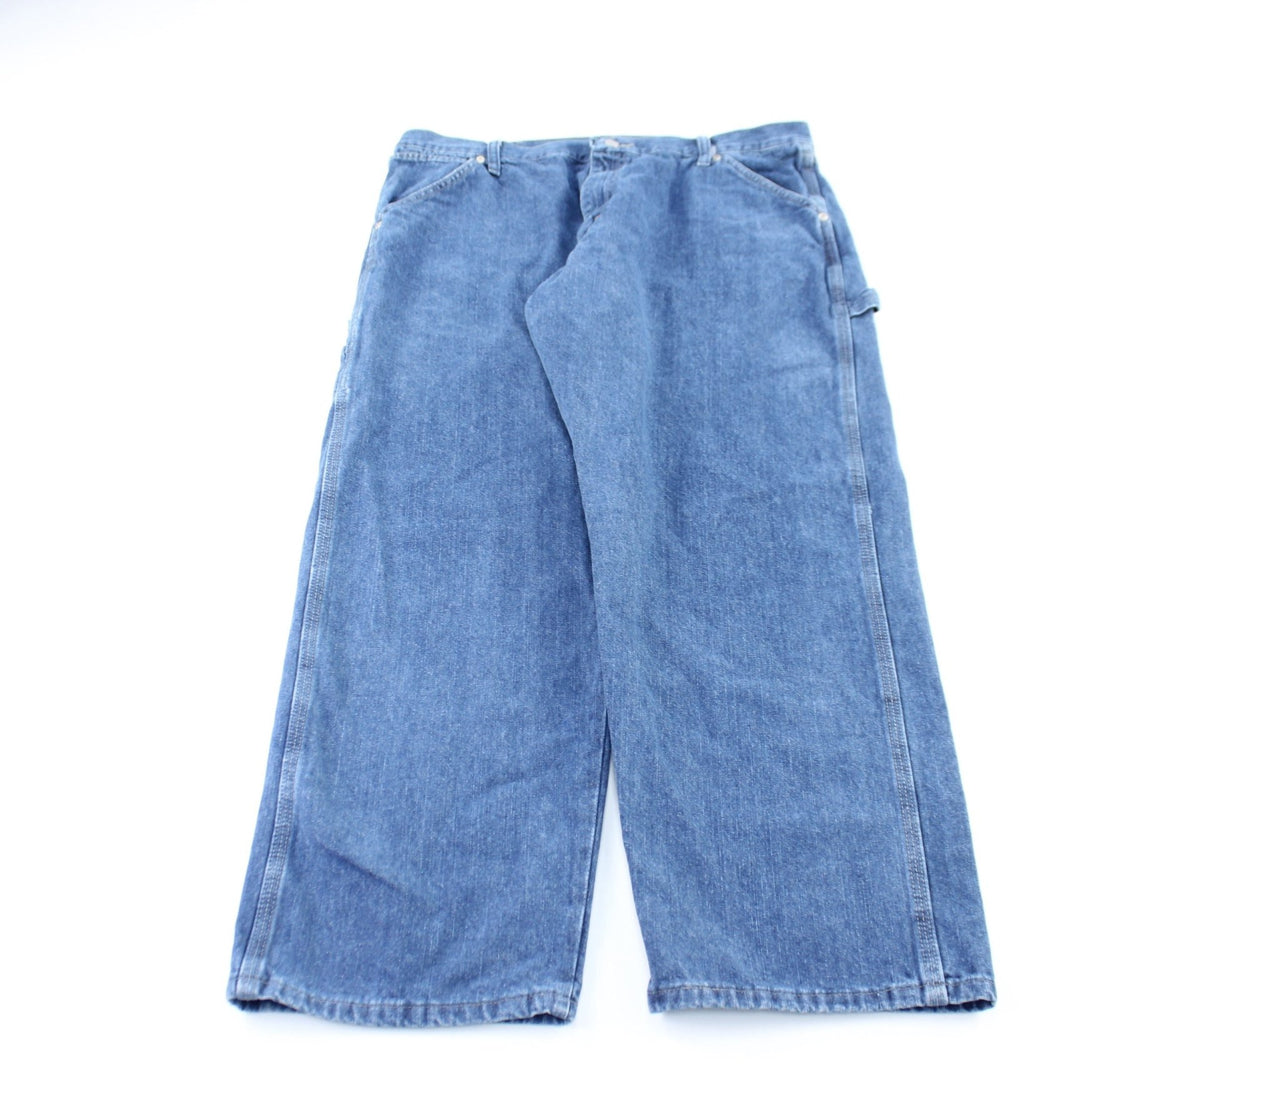 Wrangler Denim Carpenter Jeans – ThriftedThreads.com